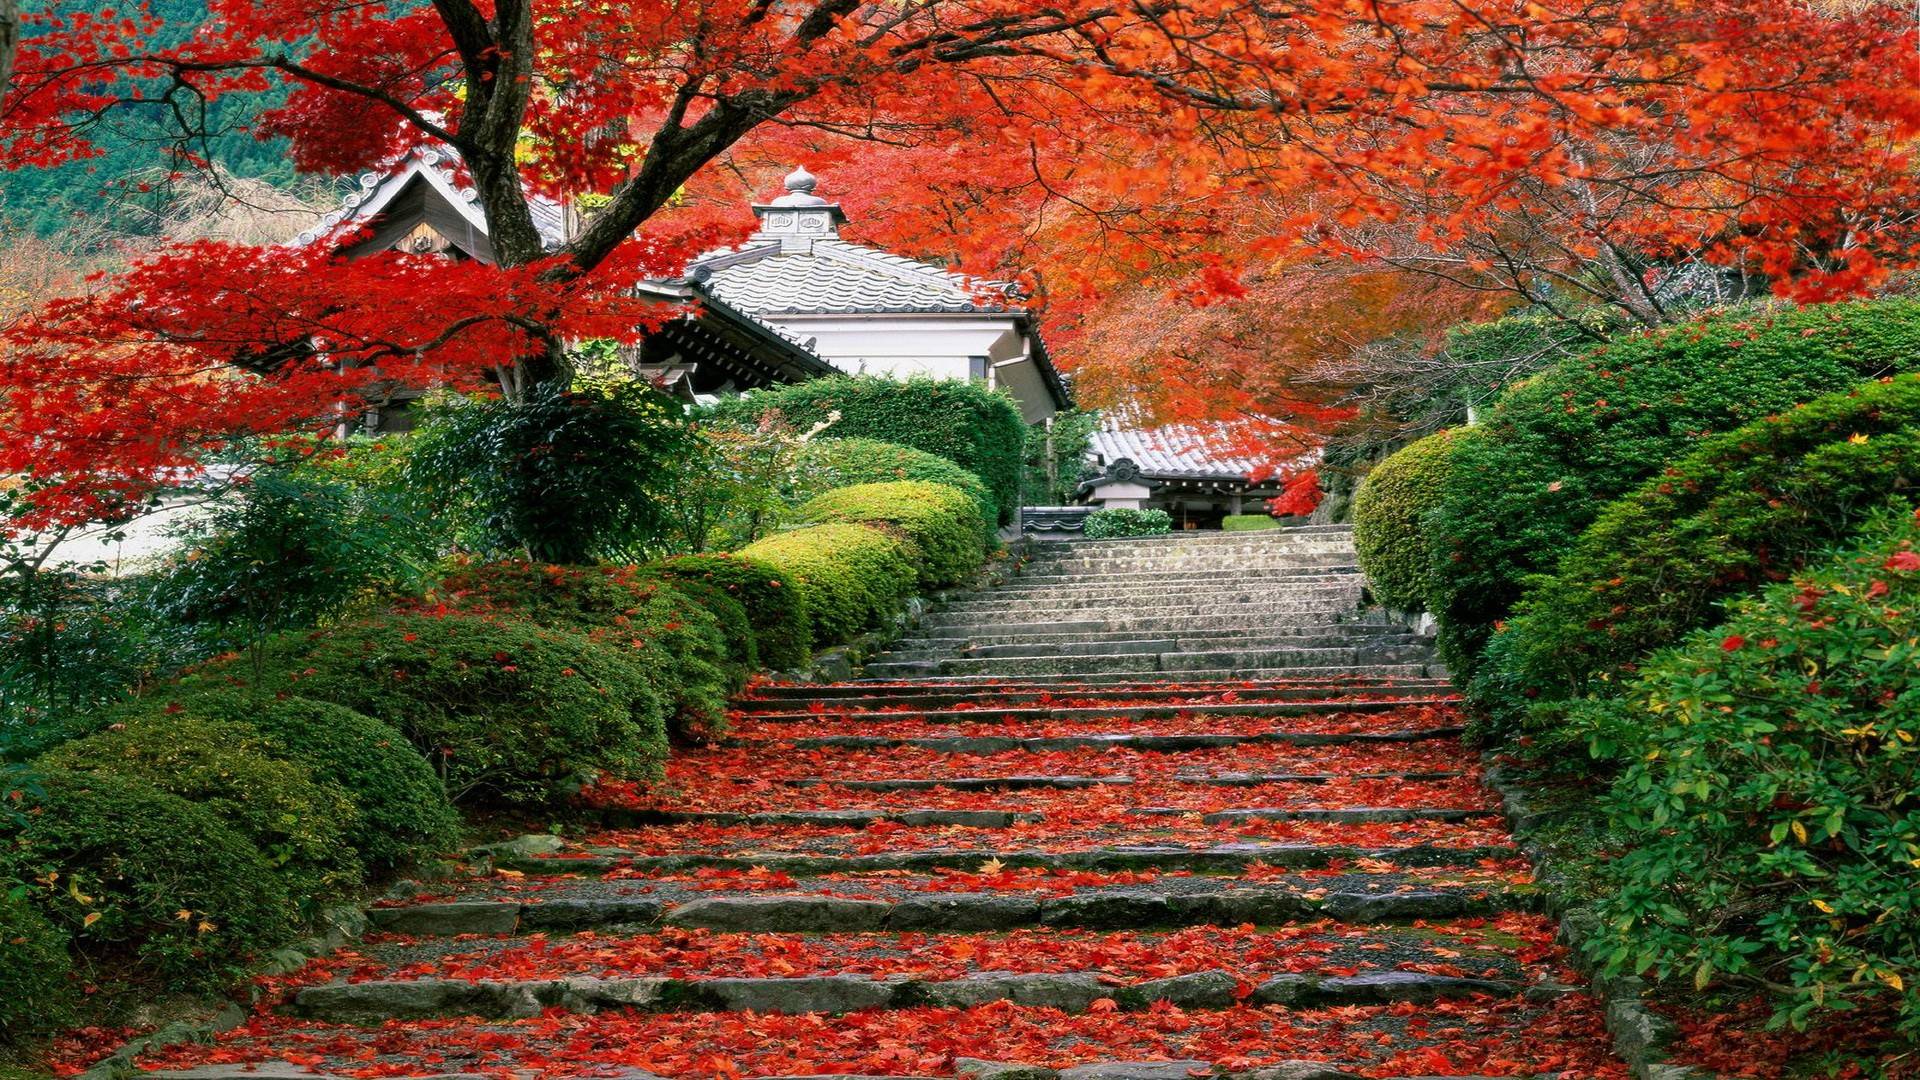 دانلود عکس با کیفیت از طبیعت پاییزی کشور ژاپن